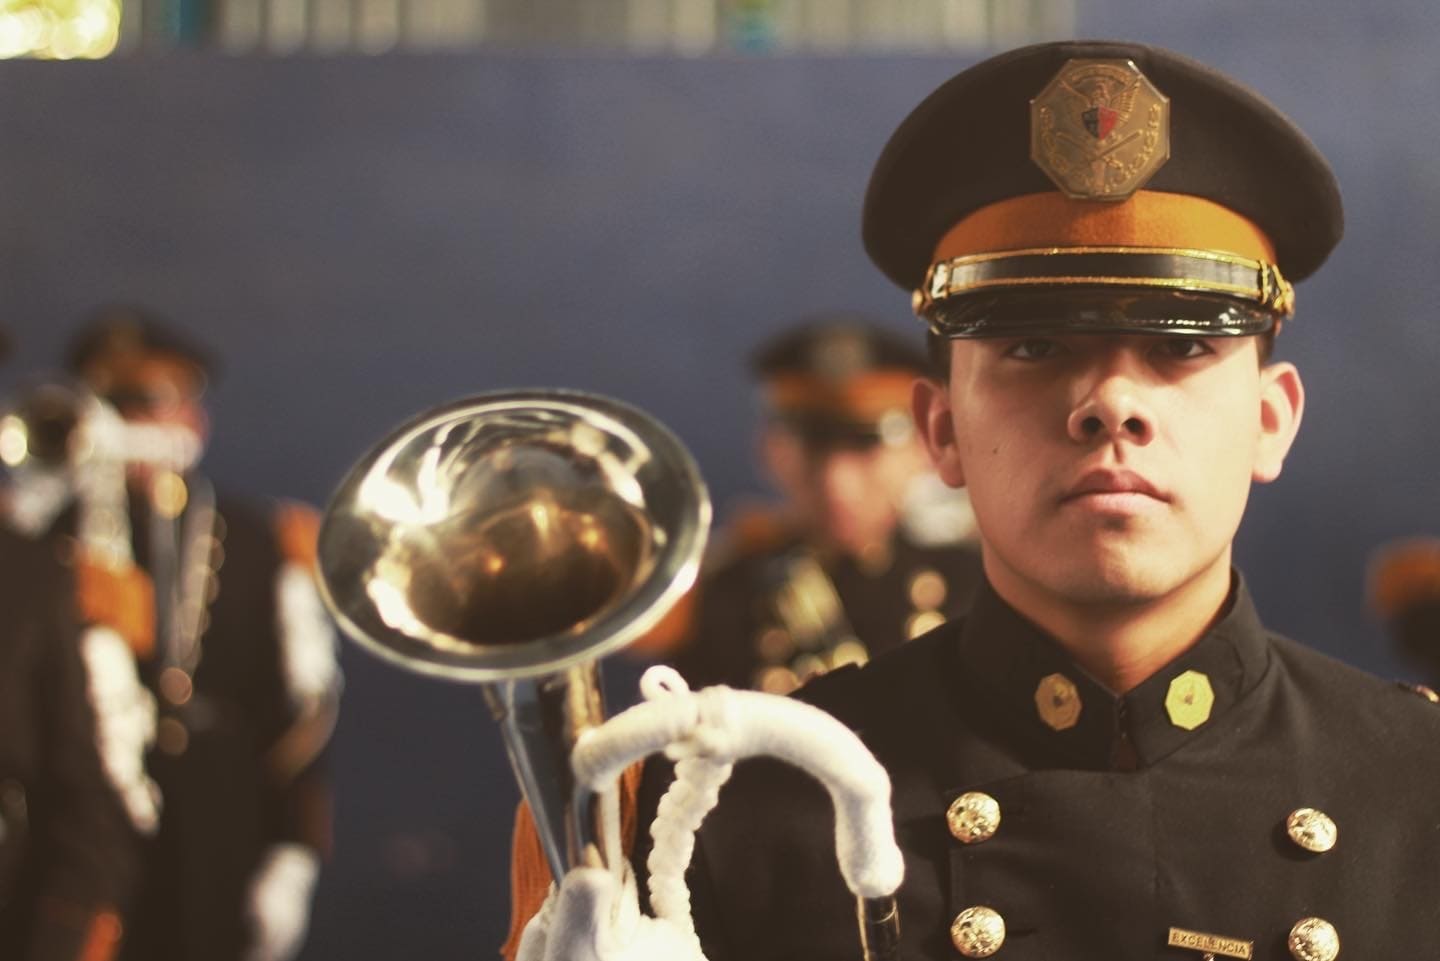 El uniforme militar es un símbolo de honor que trasciende – Fuerza